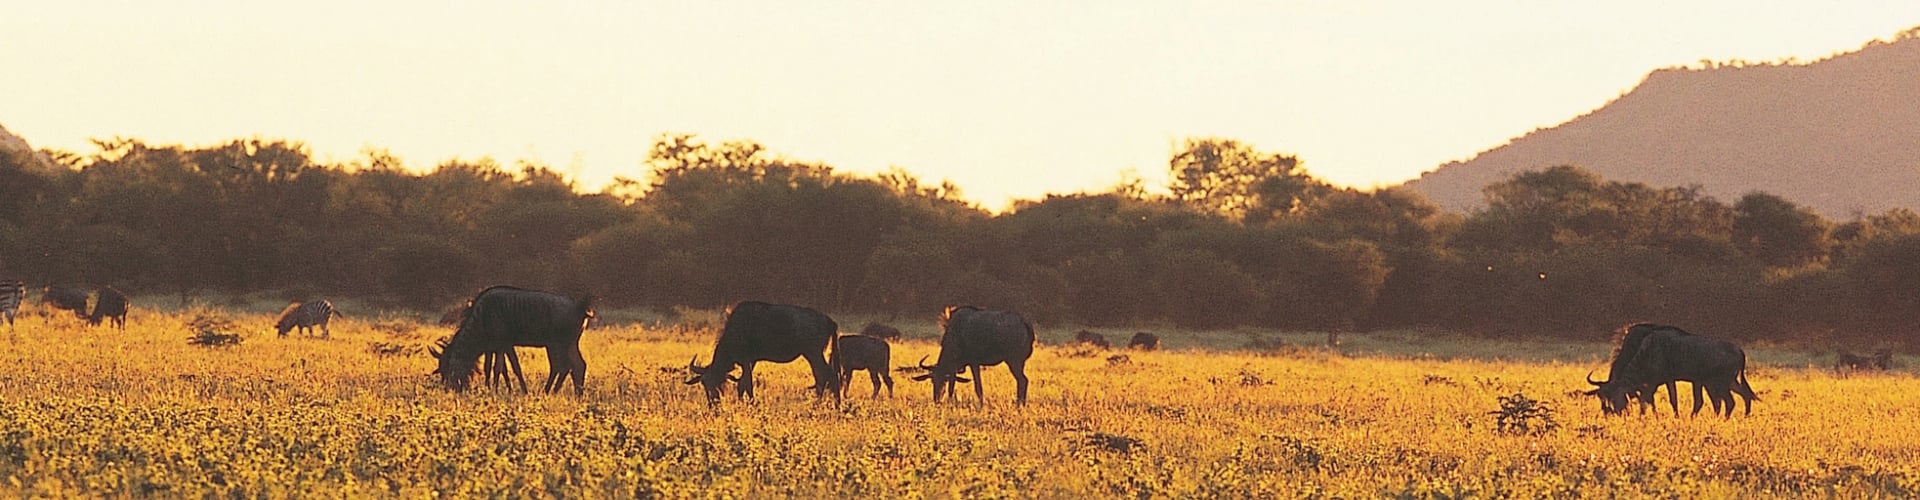 jacis-safari-lodge-madikwe-private-game-reserve-zuid-afrika